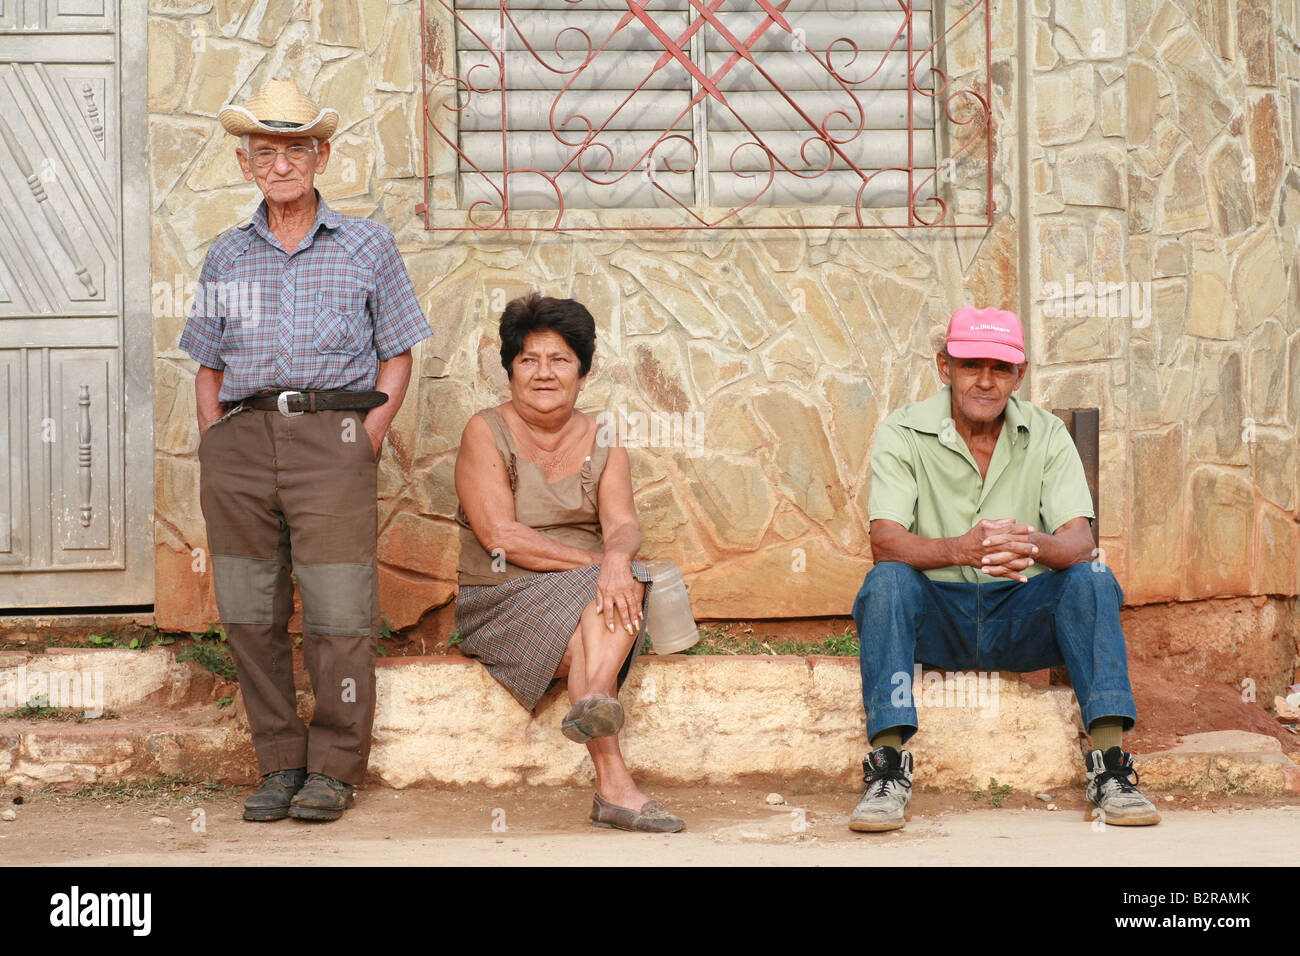 Trois cubains devant un mur Trinité-province de Sancti Spiritus Cuba Amérique Latine Banque D'Images